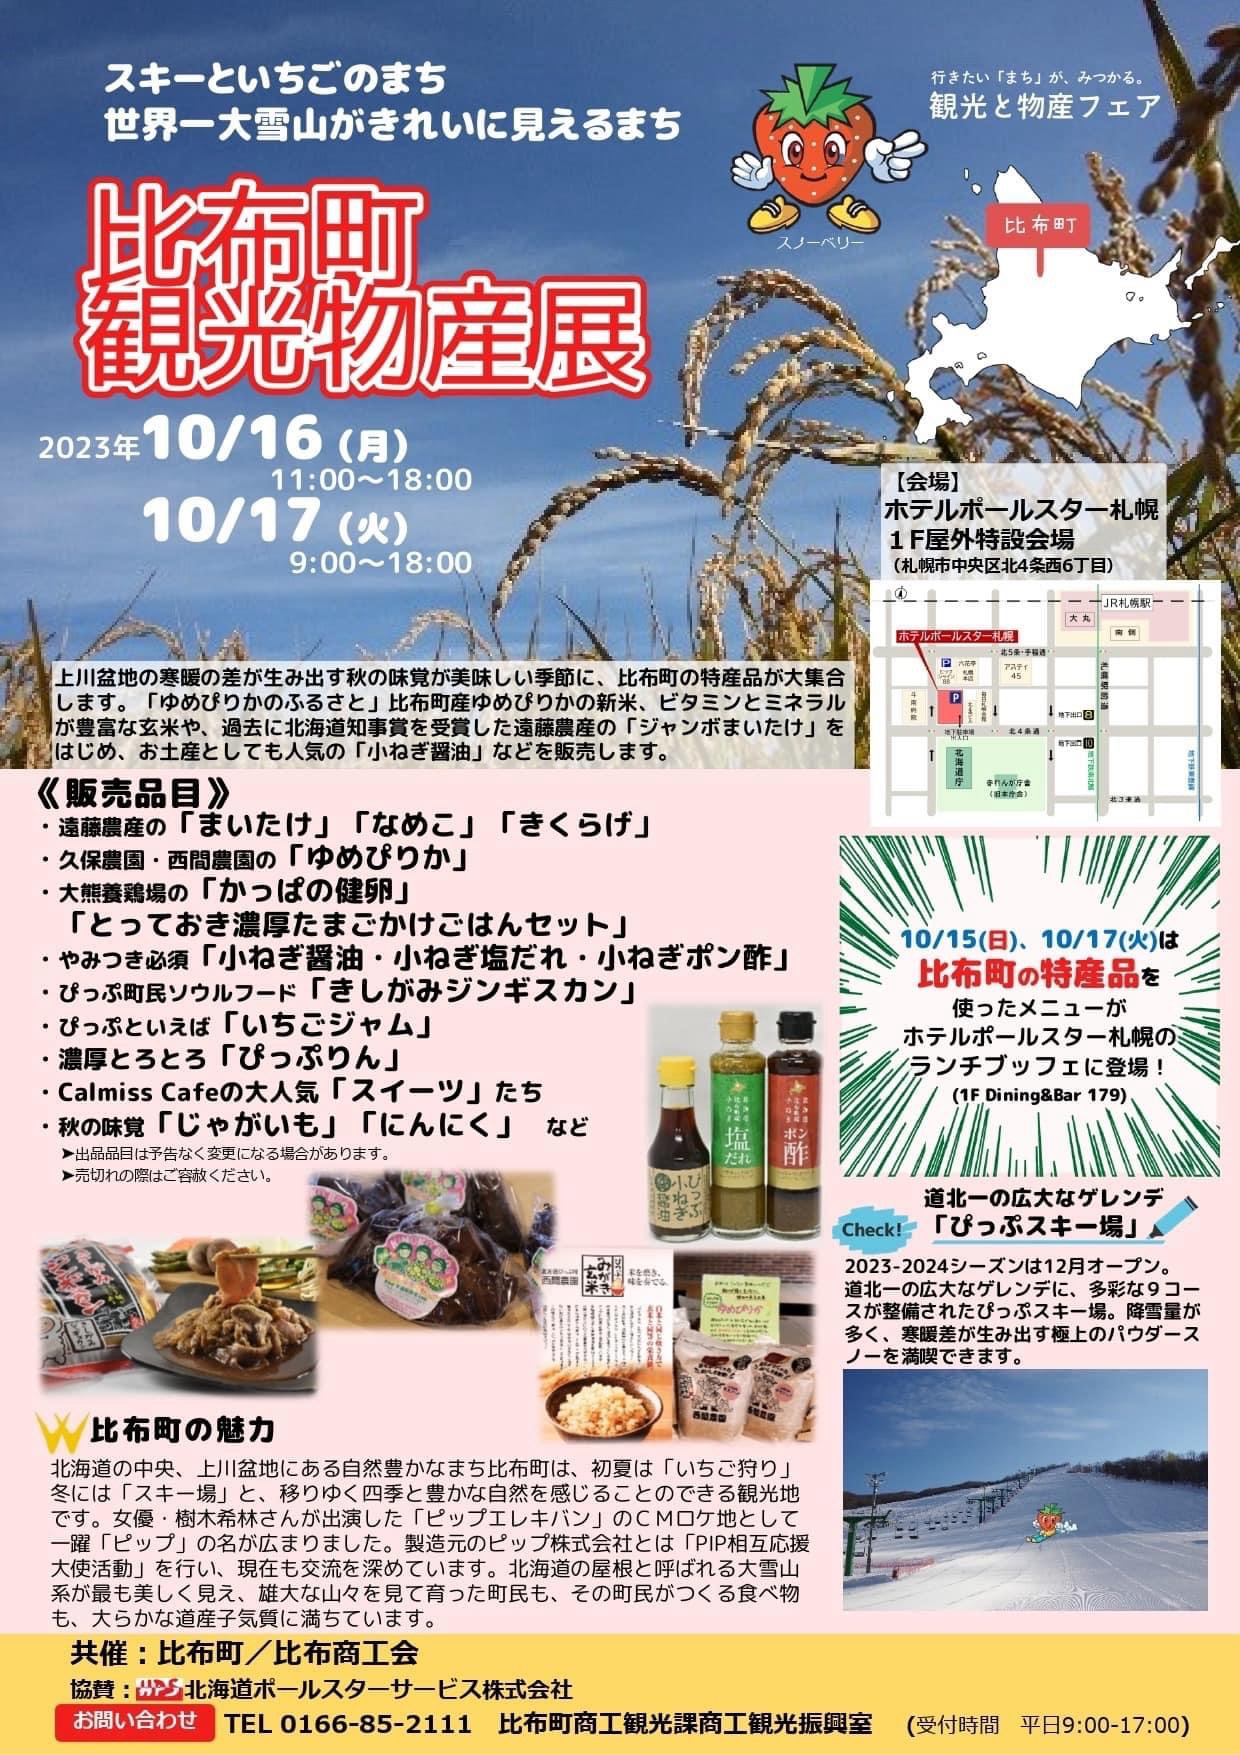 ホテルポールスター札幌にて「比布町観光物産展」開催のお知らせ-大熊養鶏場の話|社長のブログ | 大熊養鶏場